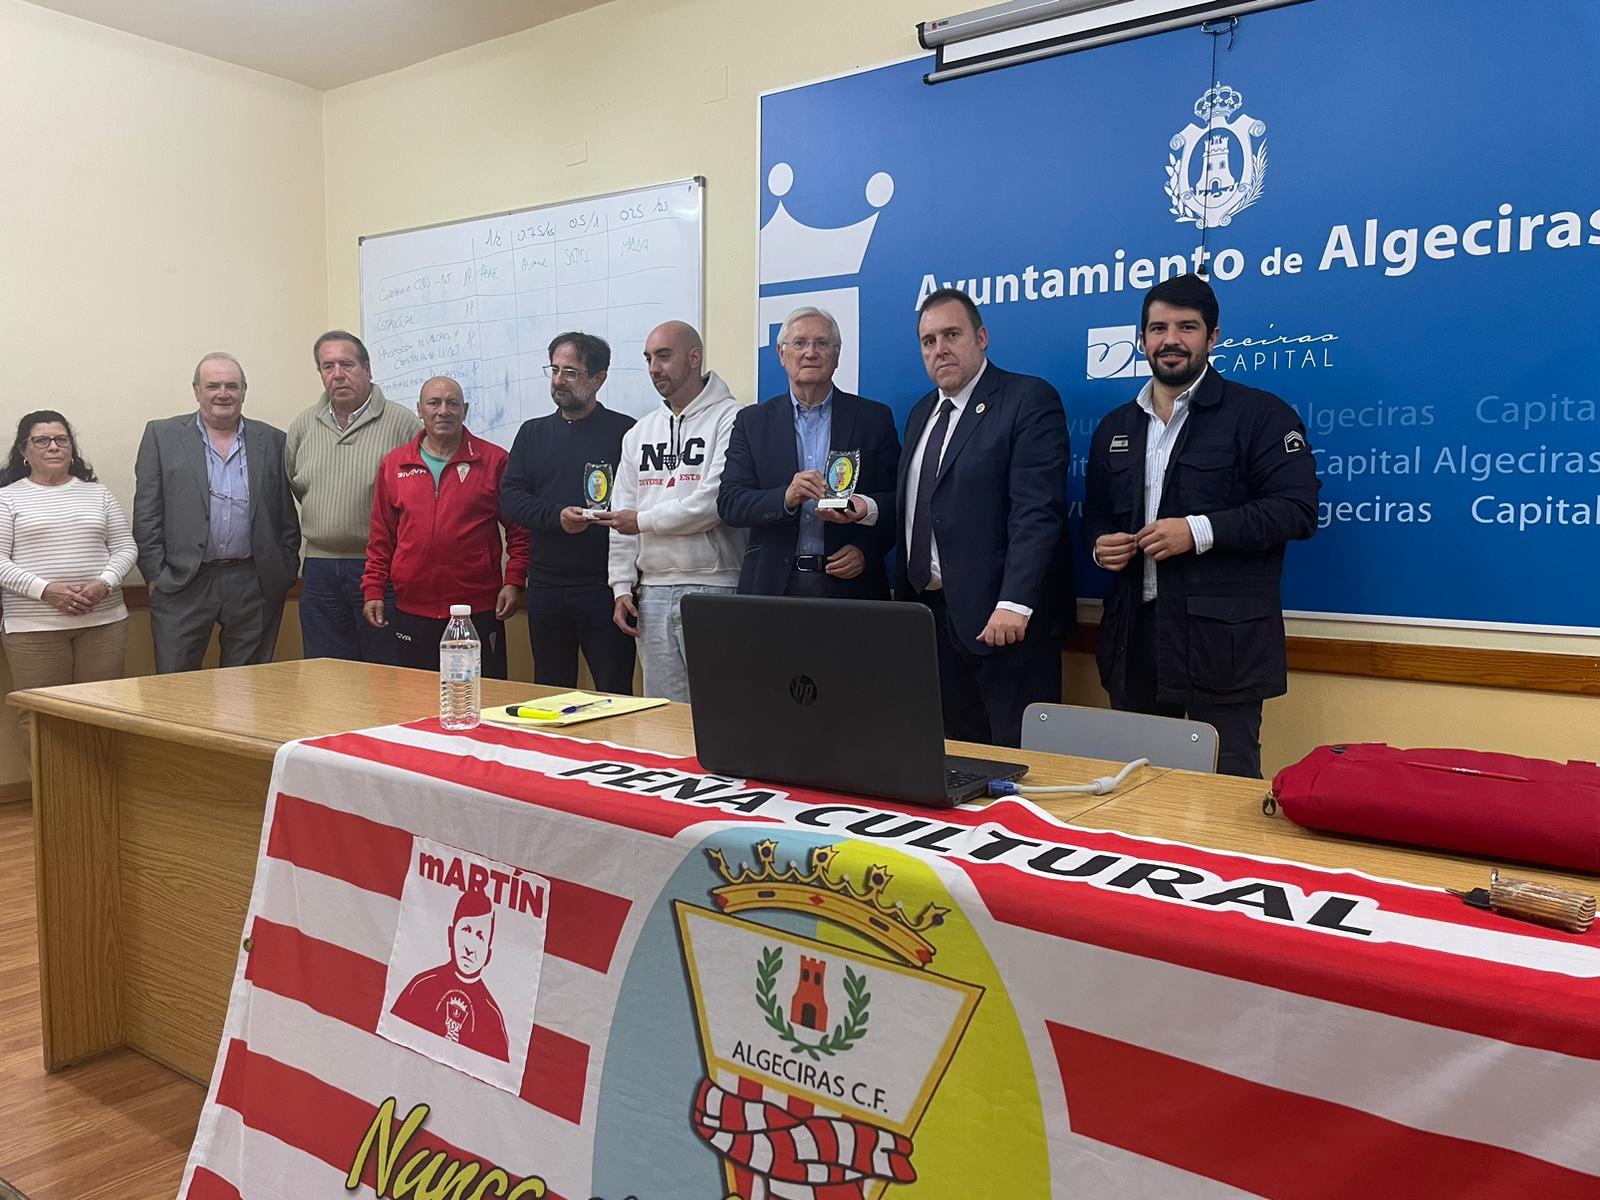 'La Bufanda Martín Gil' organiza una conferencia para contar los hitos del Algeciras CF